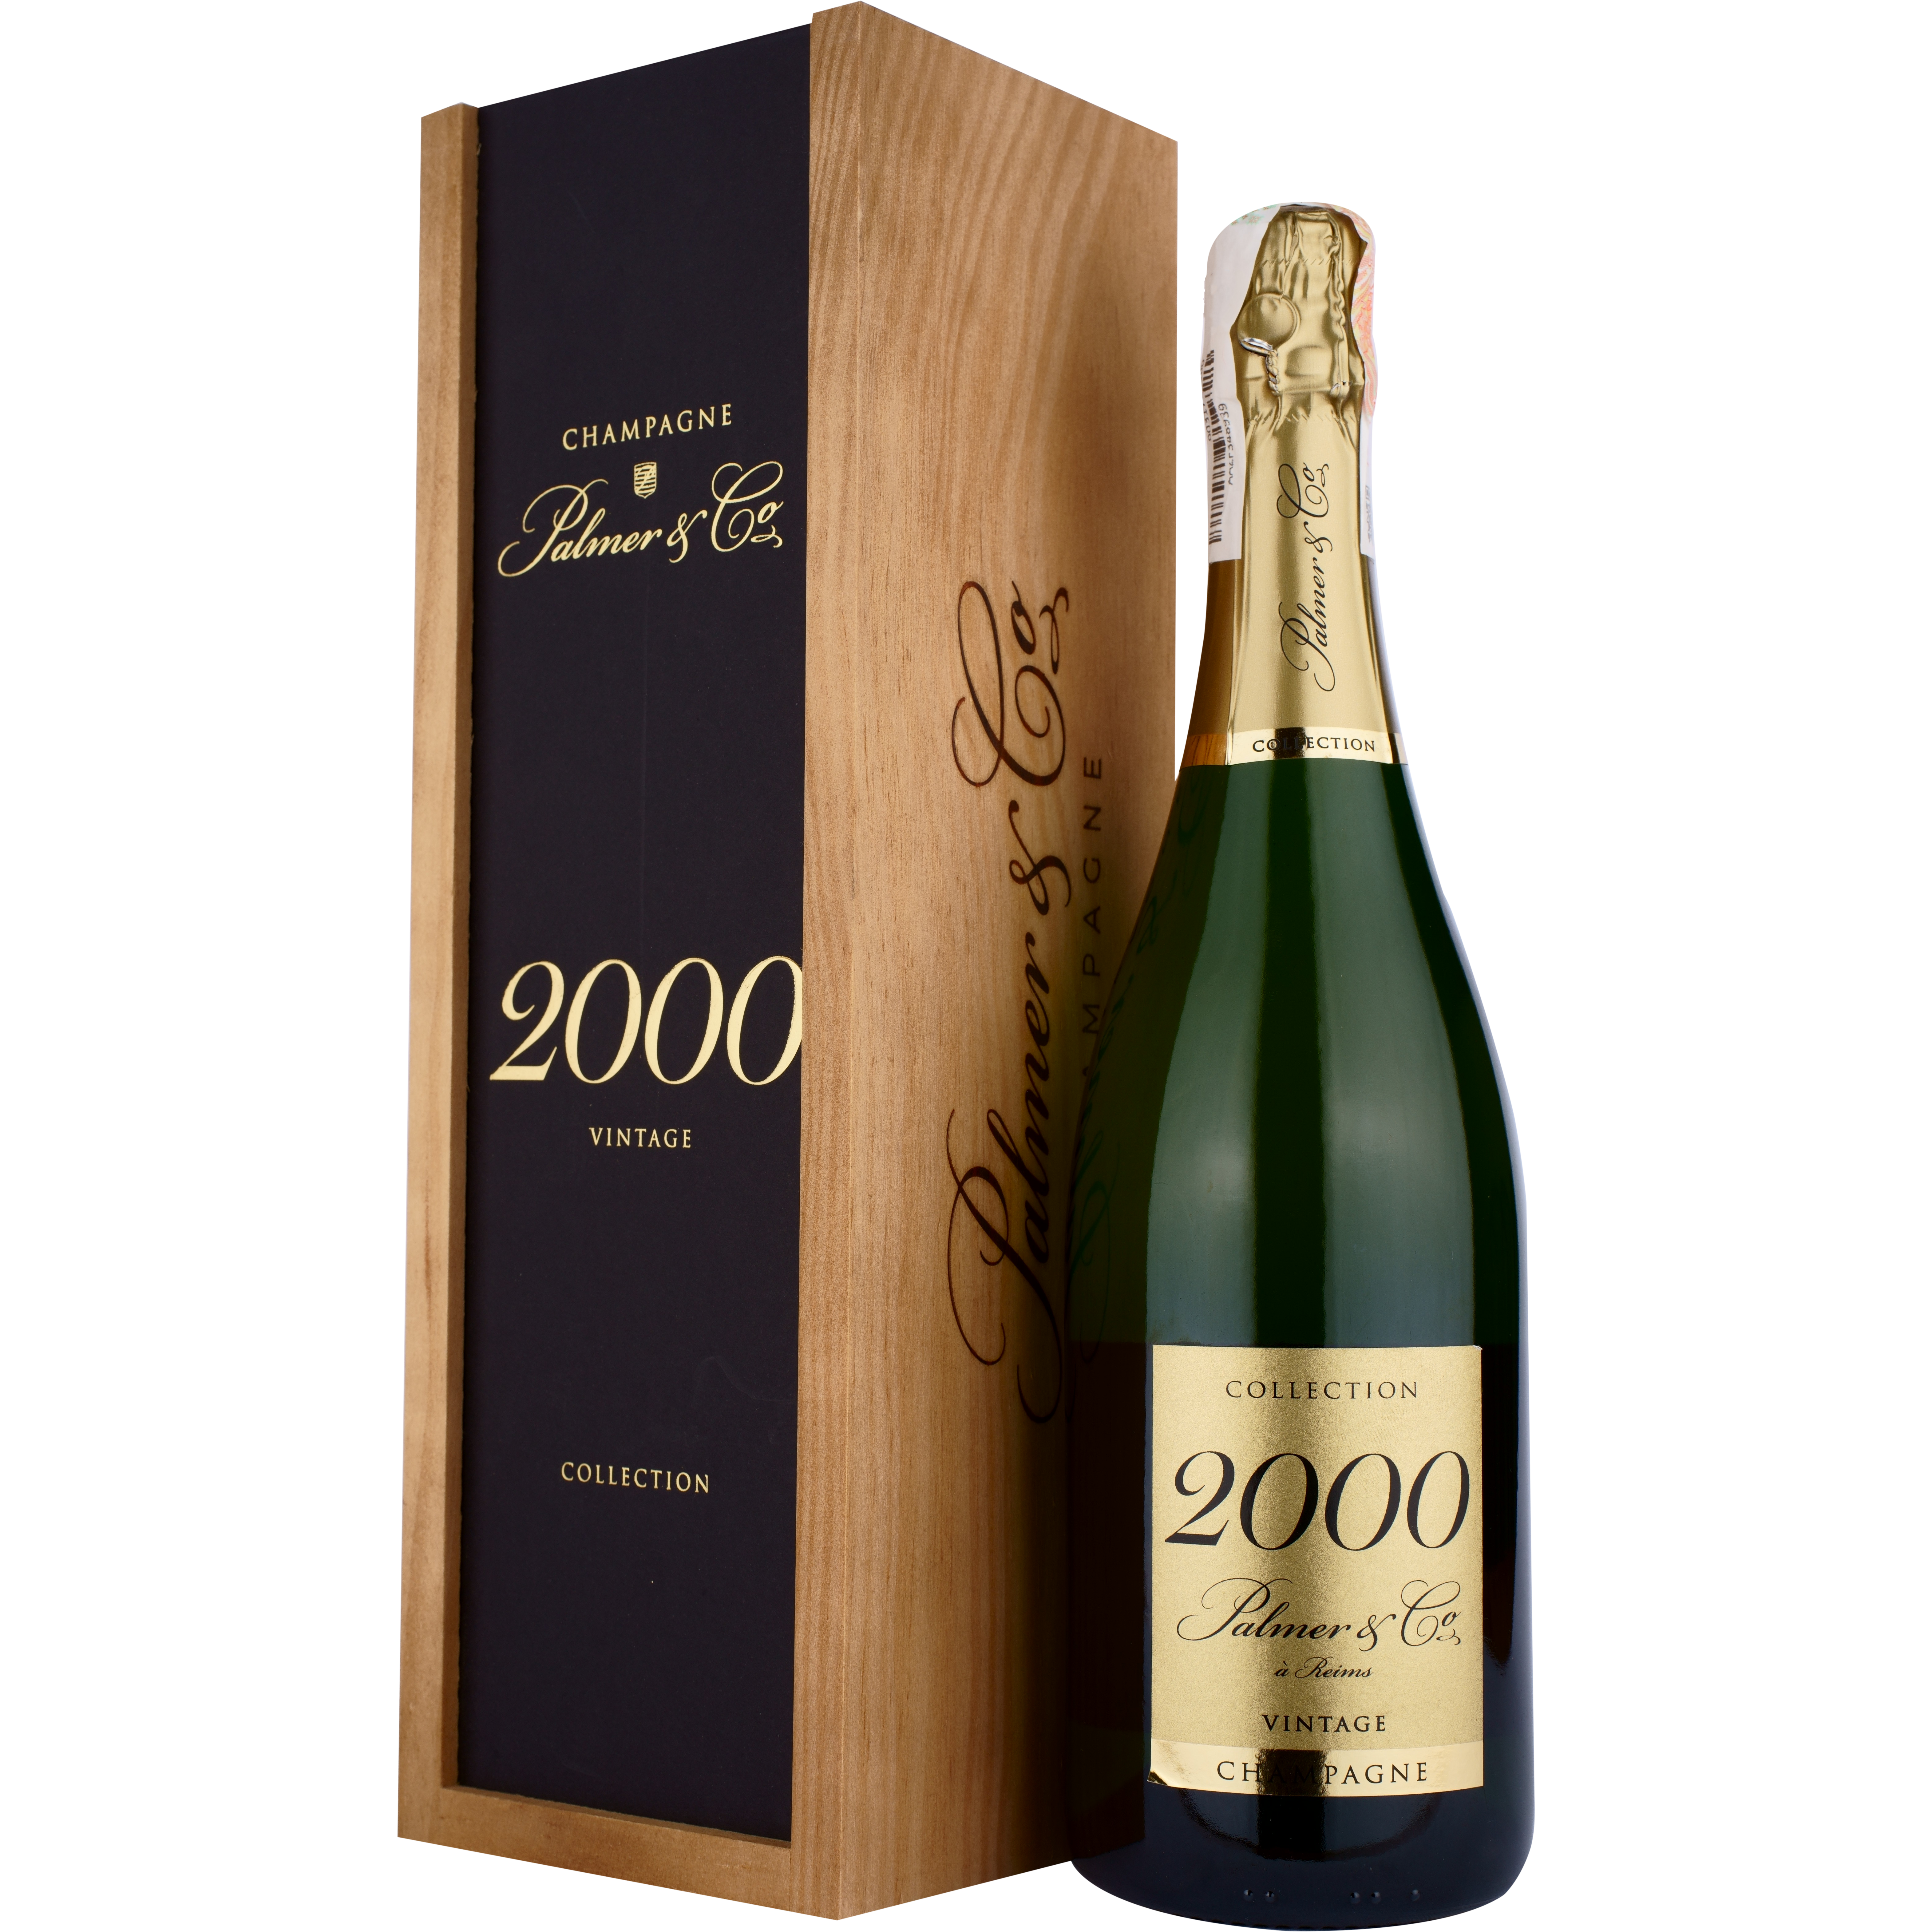 Шампанское Palmer & Co Champagne Brut Collection Vintage 2000 AOC, белое, брют, в деревянной коробке, 0,75 л - фото 1